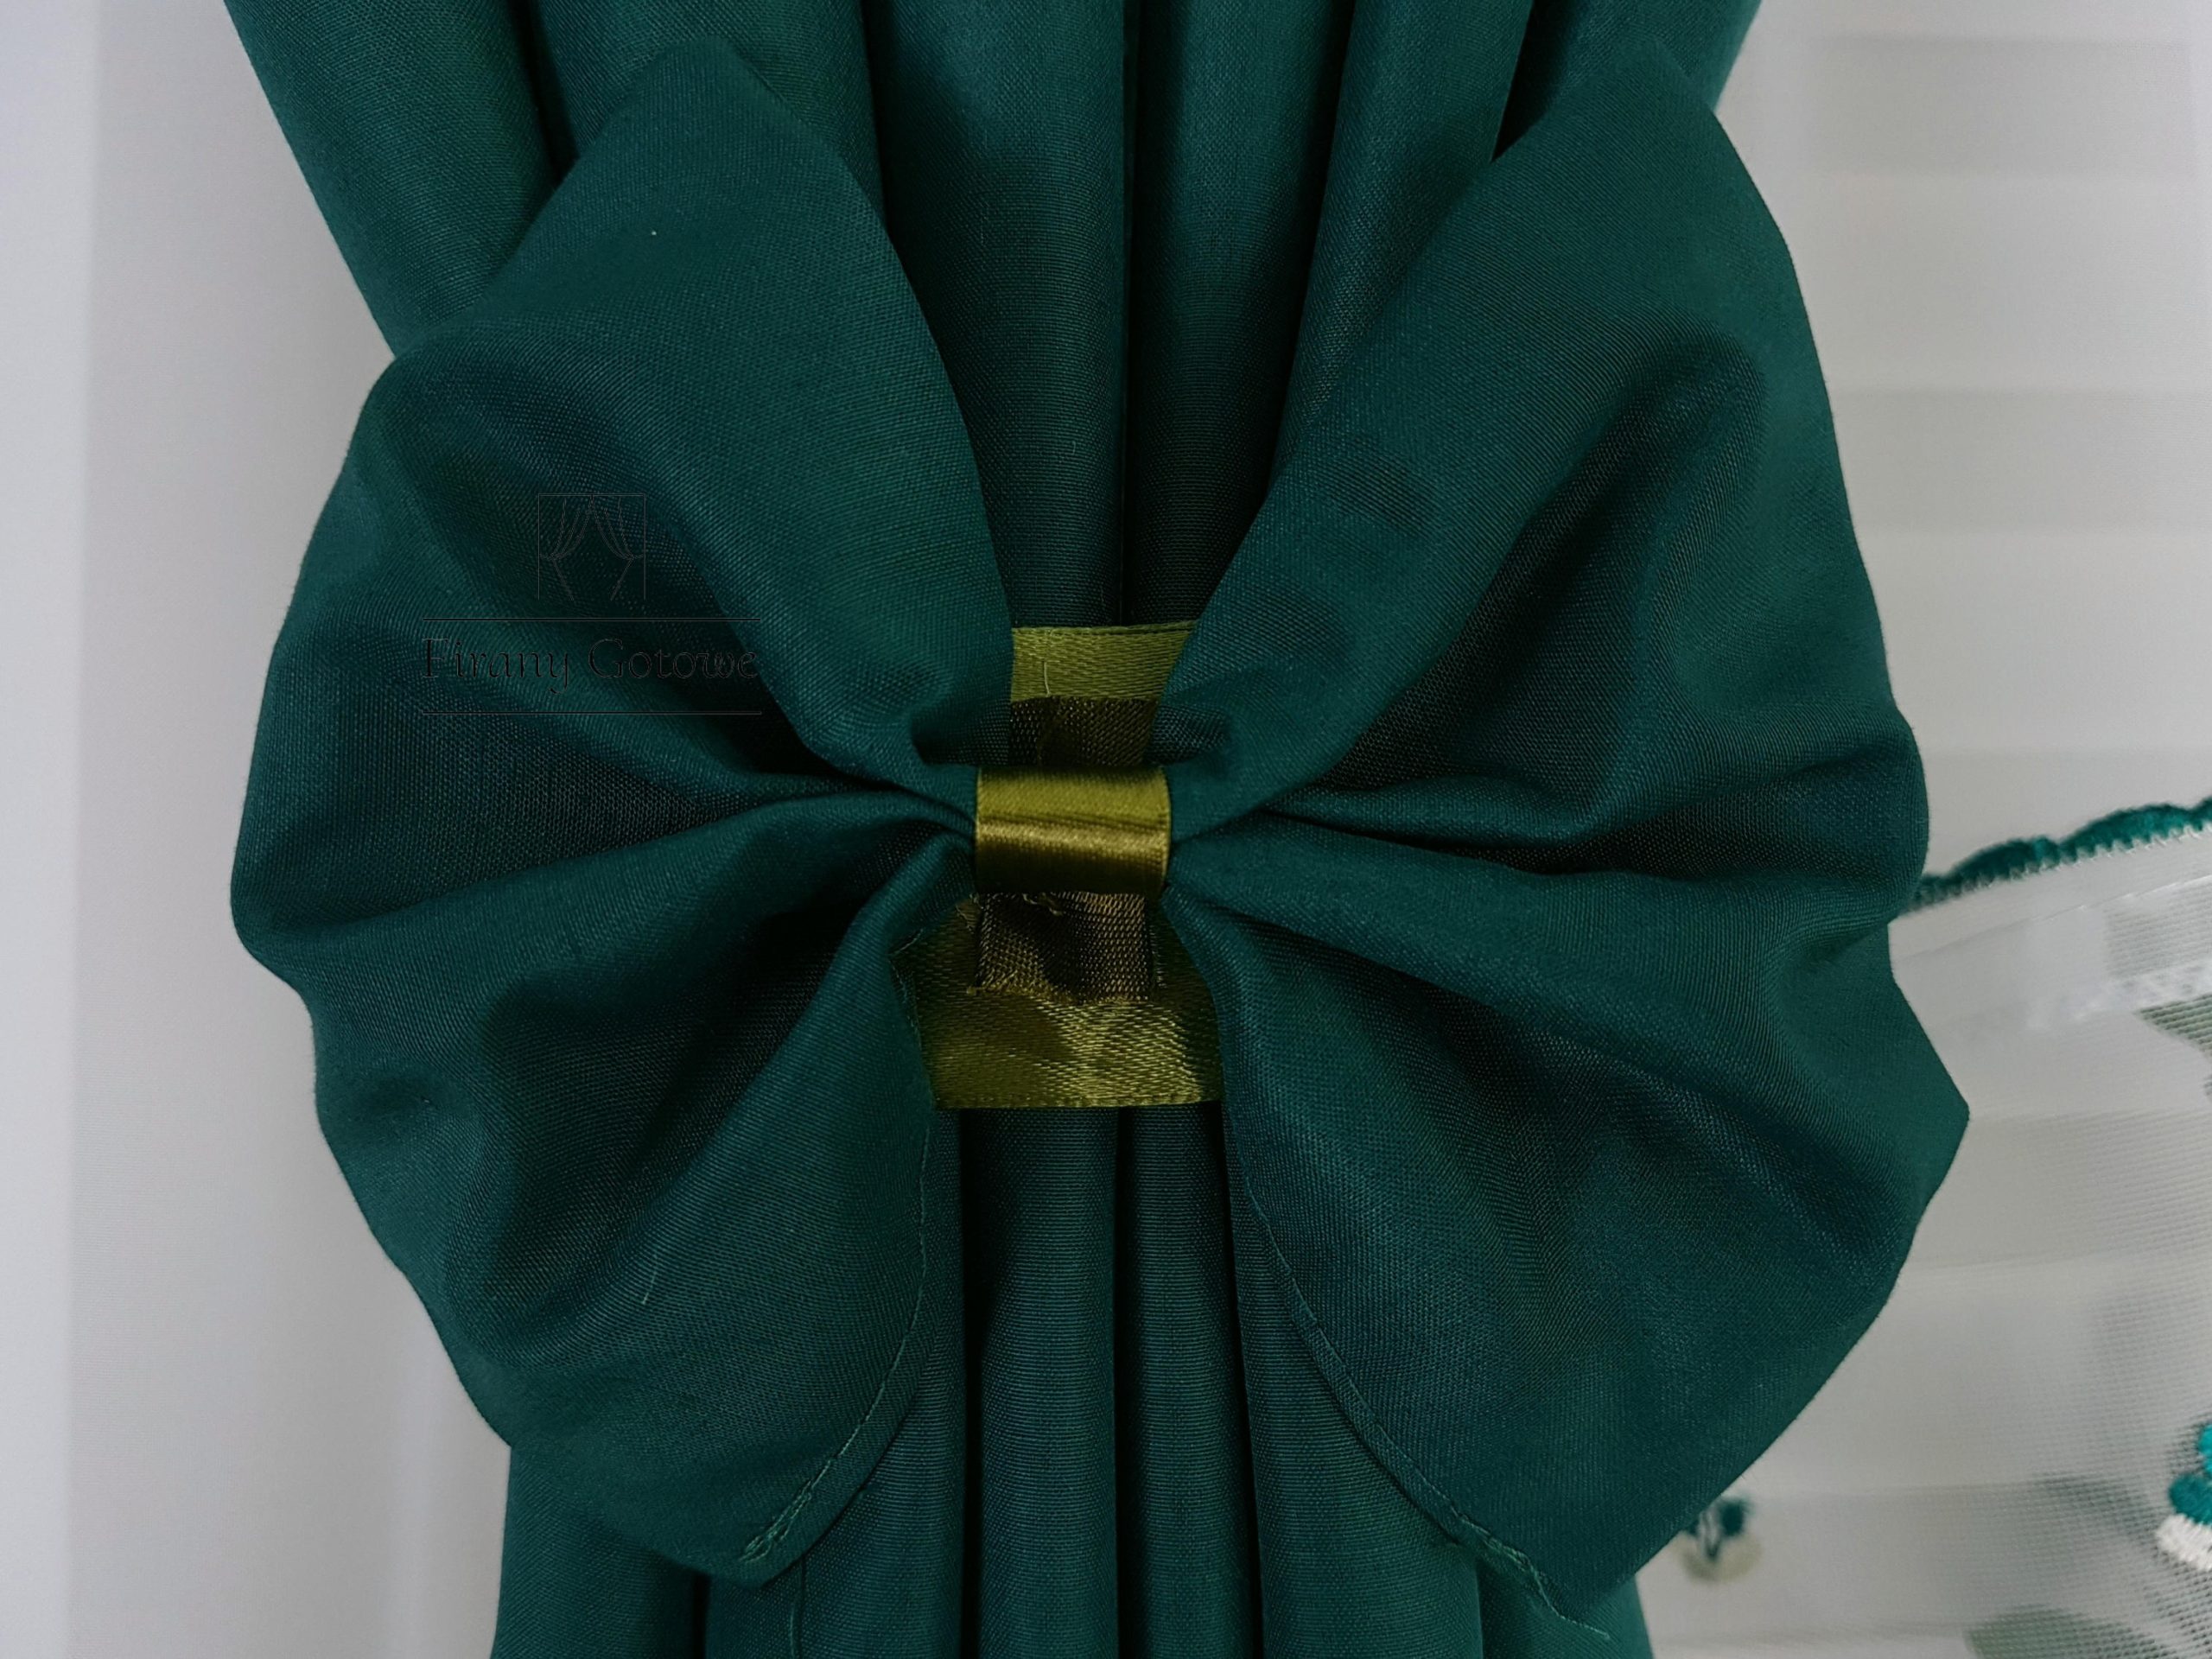 Firana gotowa z zasłonami ozdobiona lambrekinem- zielona